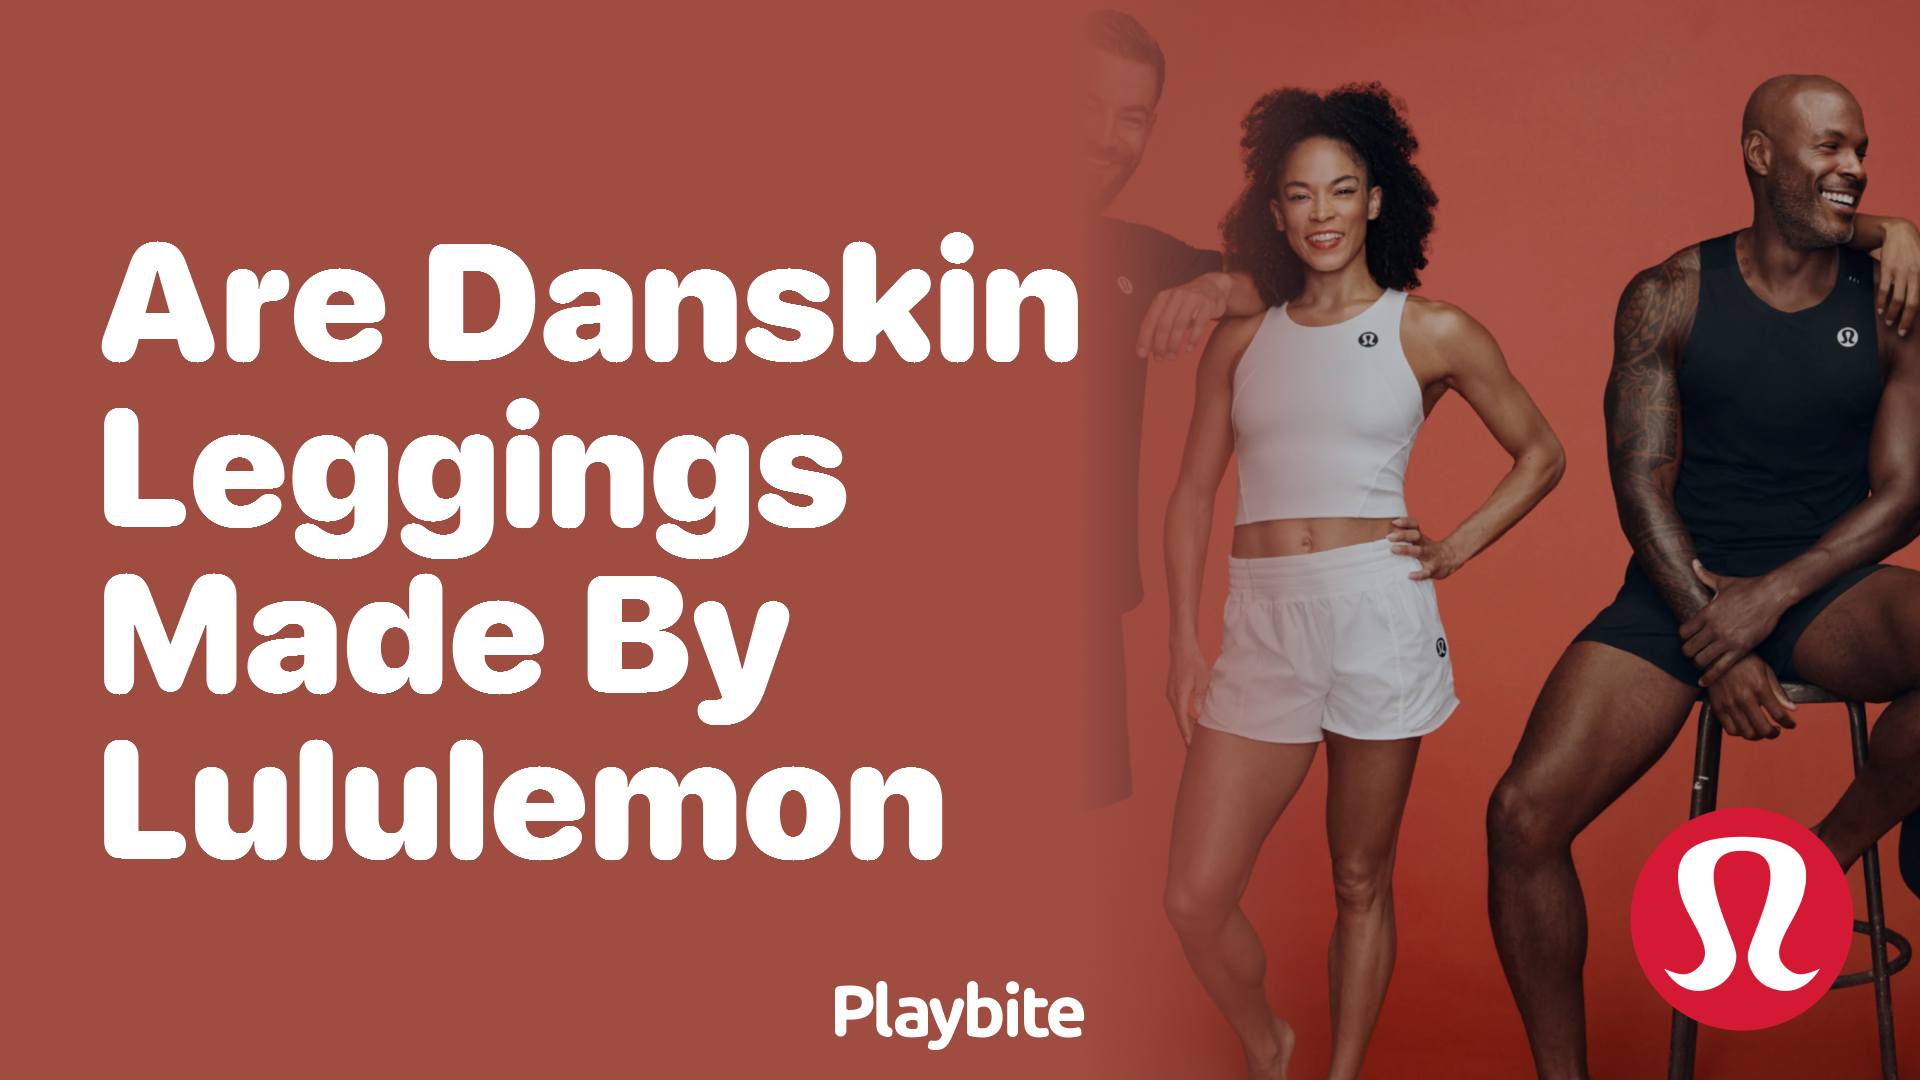 Are Danskin Leggings Made by Lululemon? - Playbite